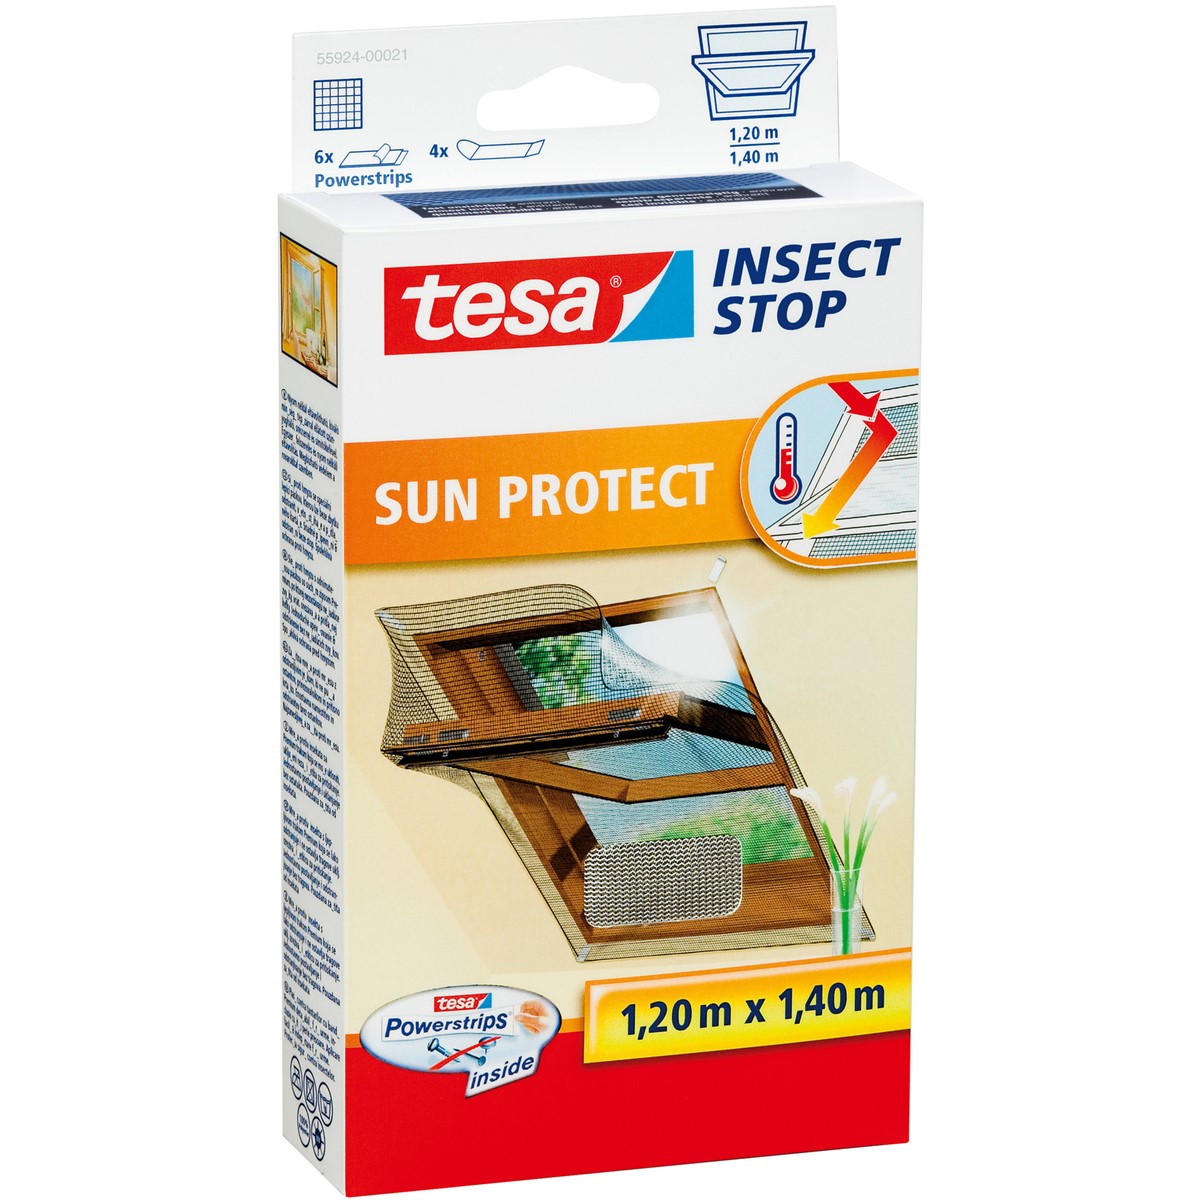 tesa 55924-00021 - Fliegengitter Insect Stop Klett SUN PROTECT für  Dachfenster, 1,2m x 1,4m, anthrazit-metallic